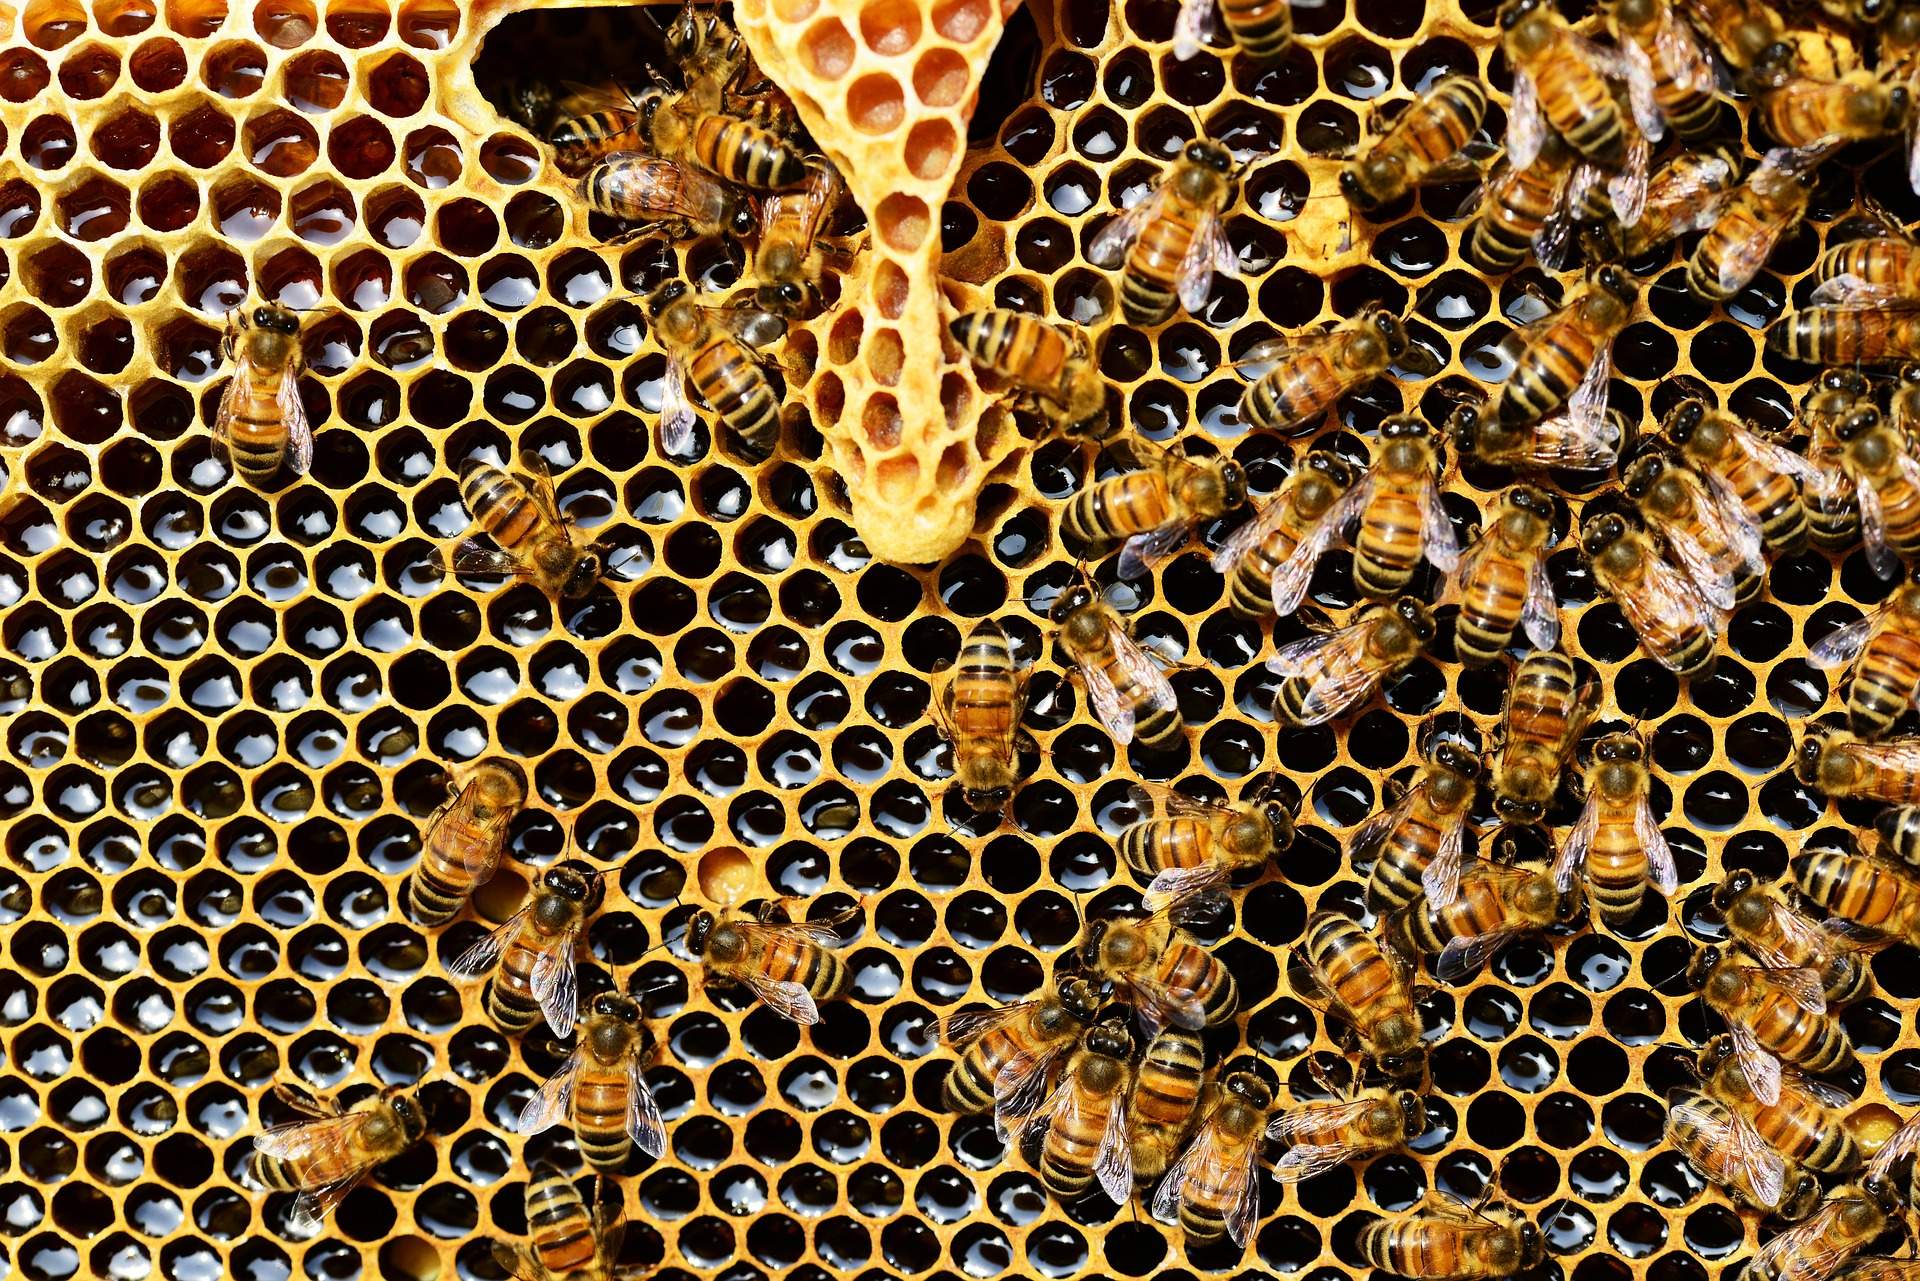 Bees from https://pixabay.com/en/queen-cup-honeycomb-honey-bee-337695/, CC0 Public Domain